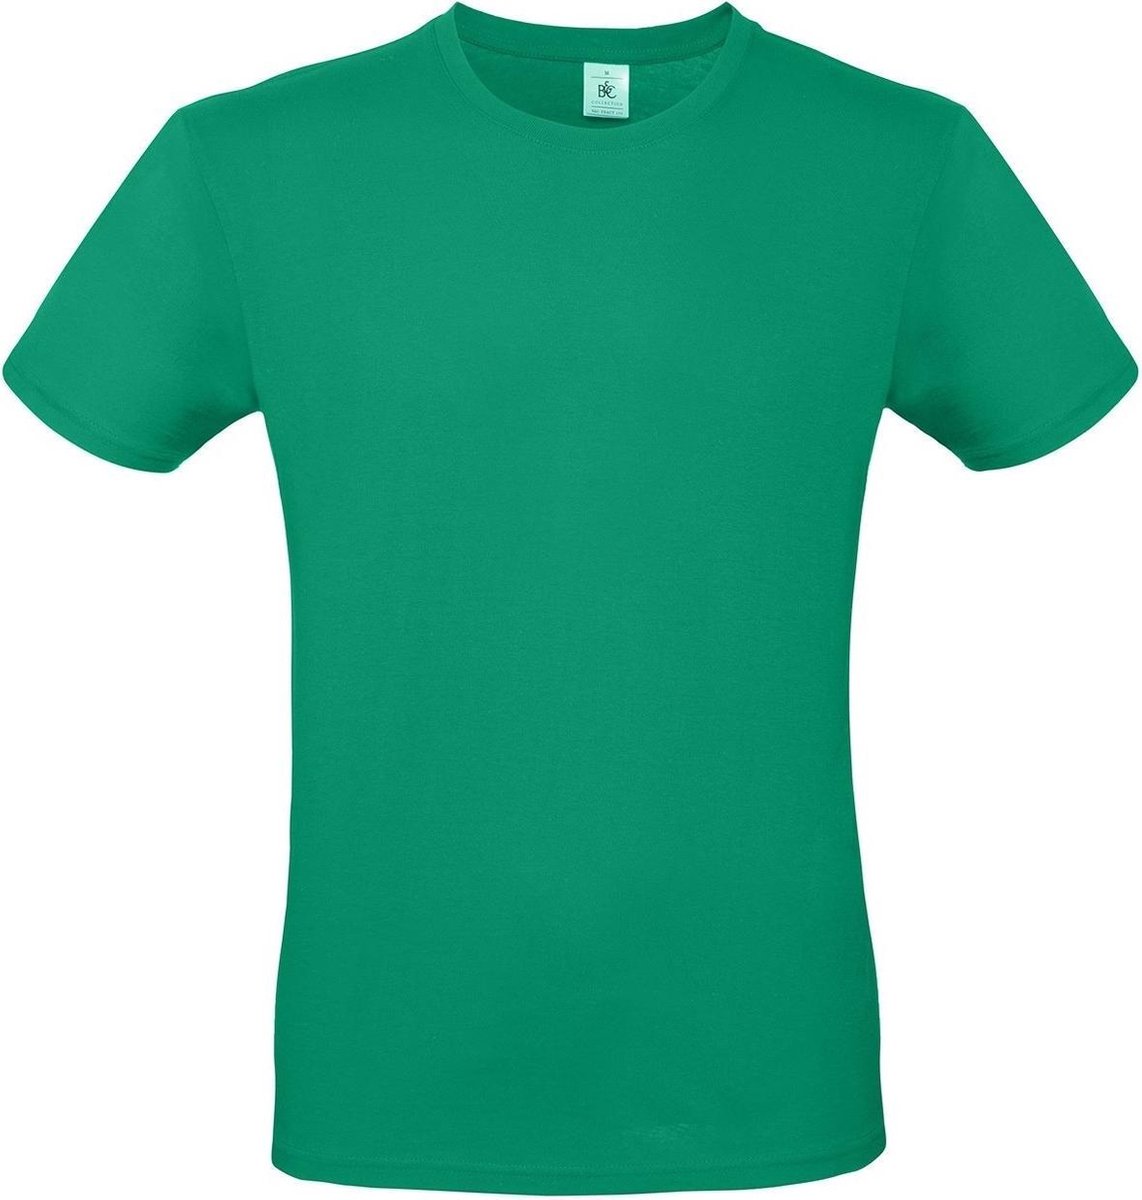 Set van 3x stuks groen basic t-shirt met ronde hals voor heren - katoen - 145 grams - groene shirts / kleding, maat: 2XL (56)